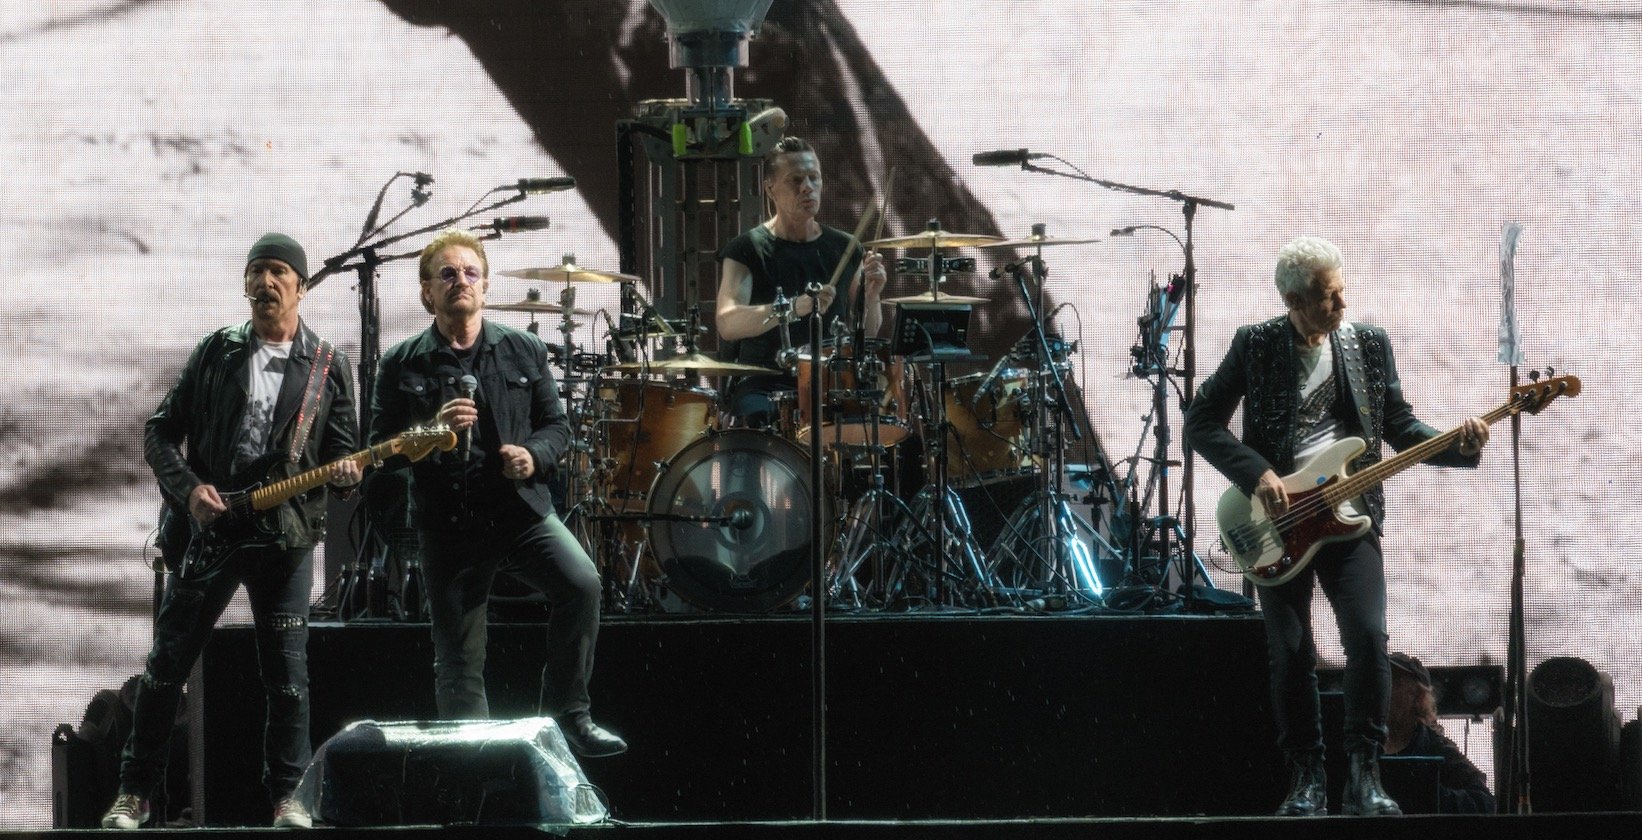 30 Jahre "Joshua Tree": Die irischen Superstars beim einzigen Stopp der Welttour in Deutschland. – U2 in Berlin.